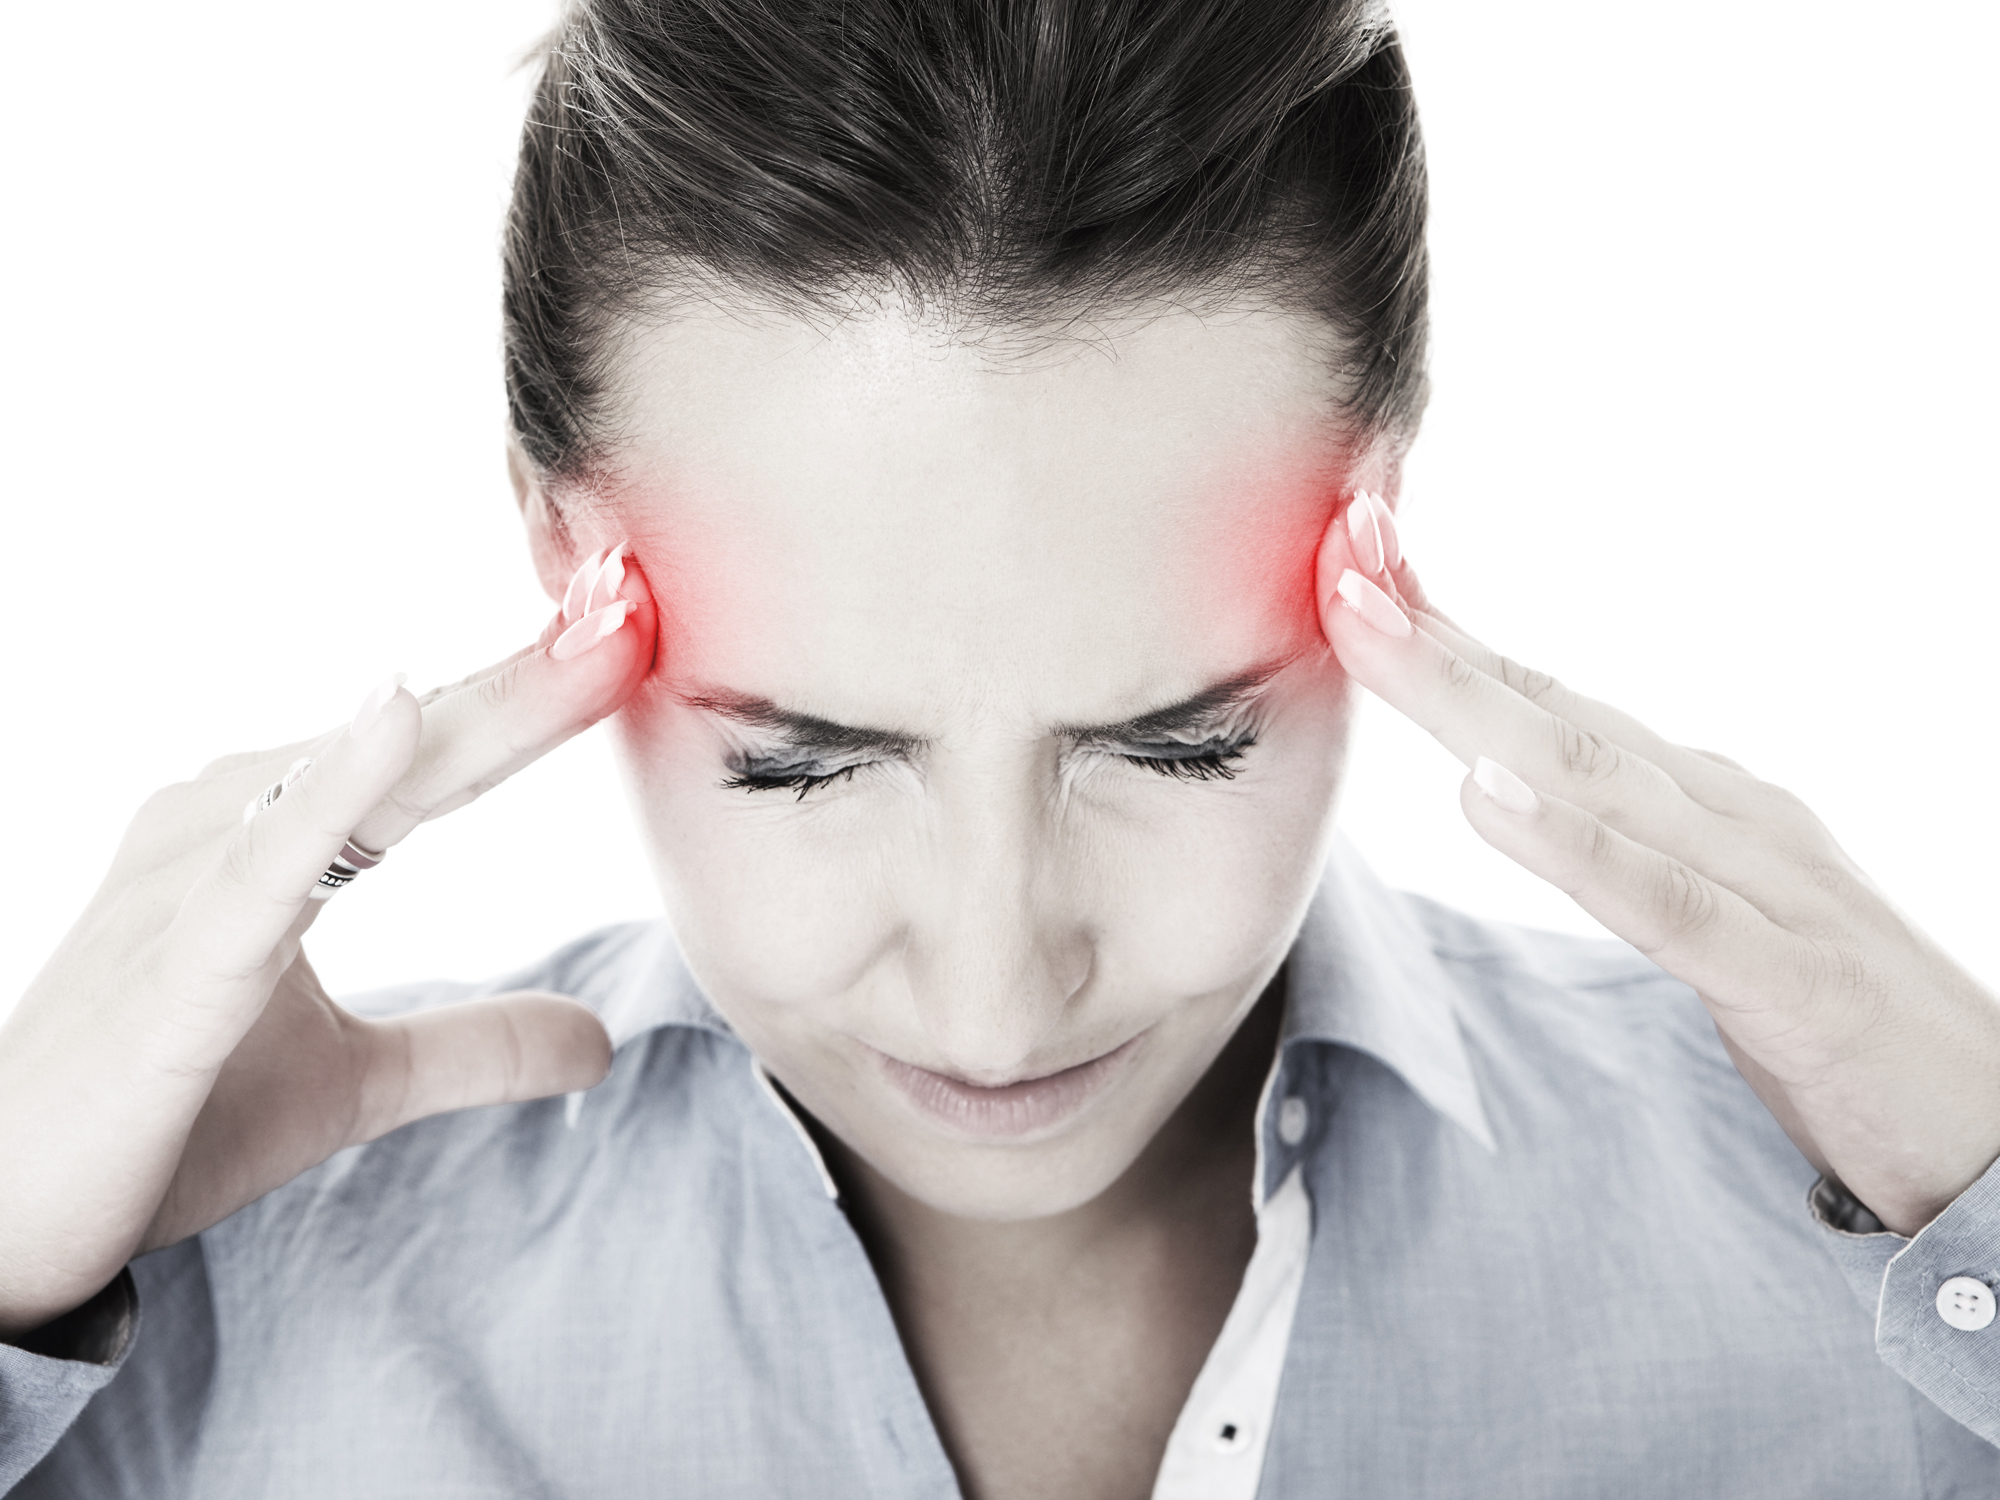 Halt migraines with the happy hormone